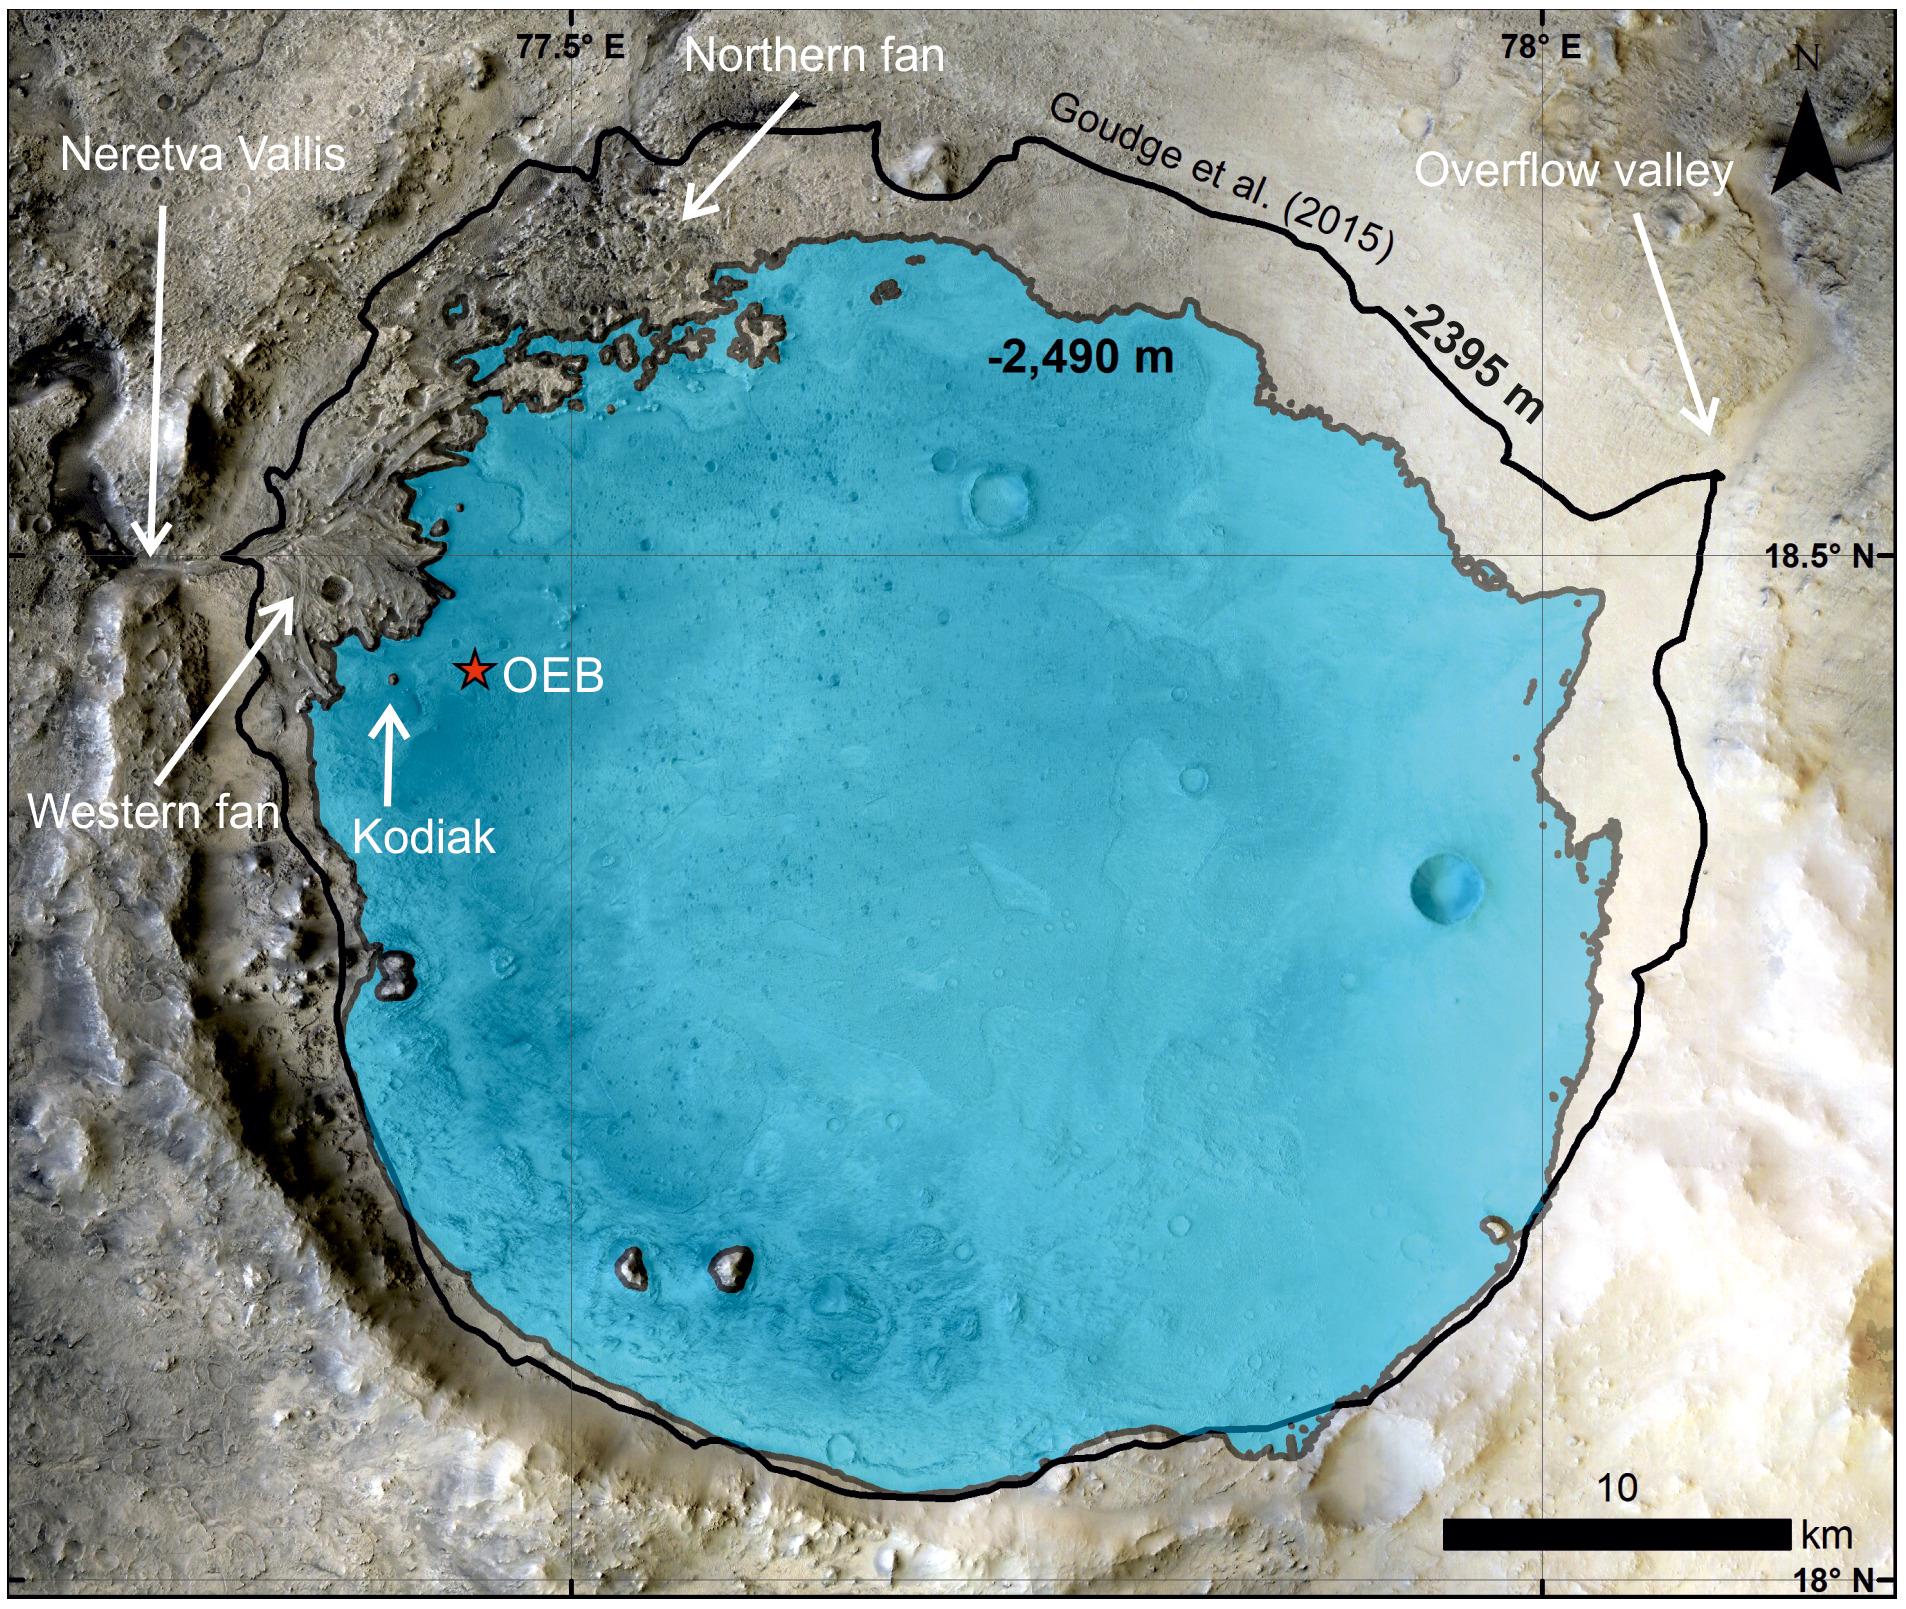 Une projection de l'ancien lac présent dans le cratère de Jezero, à l'époque du dépôt des sédiments "Kodiak" analysés par Perseverance. L'étoile rouge indique le site d'atterrissage du rover. [Science]